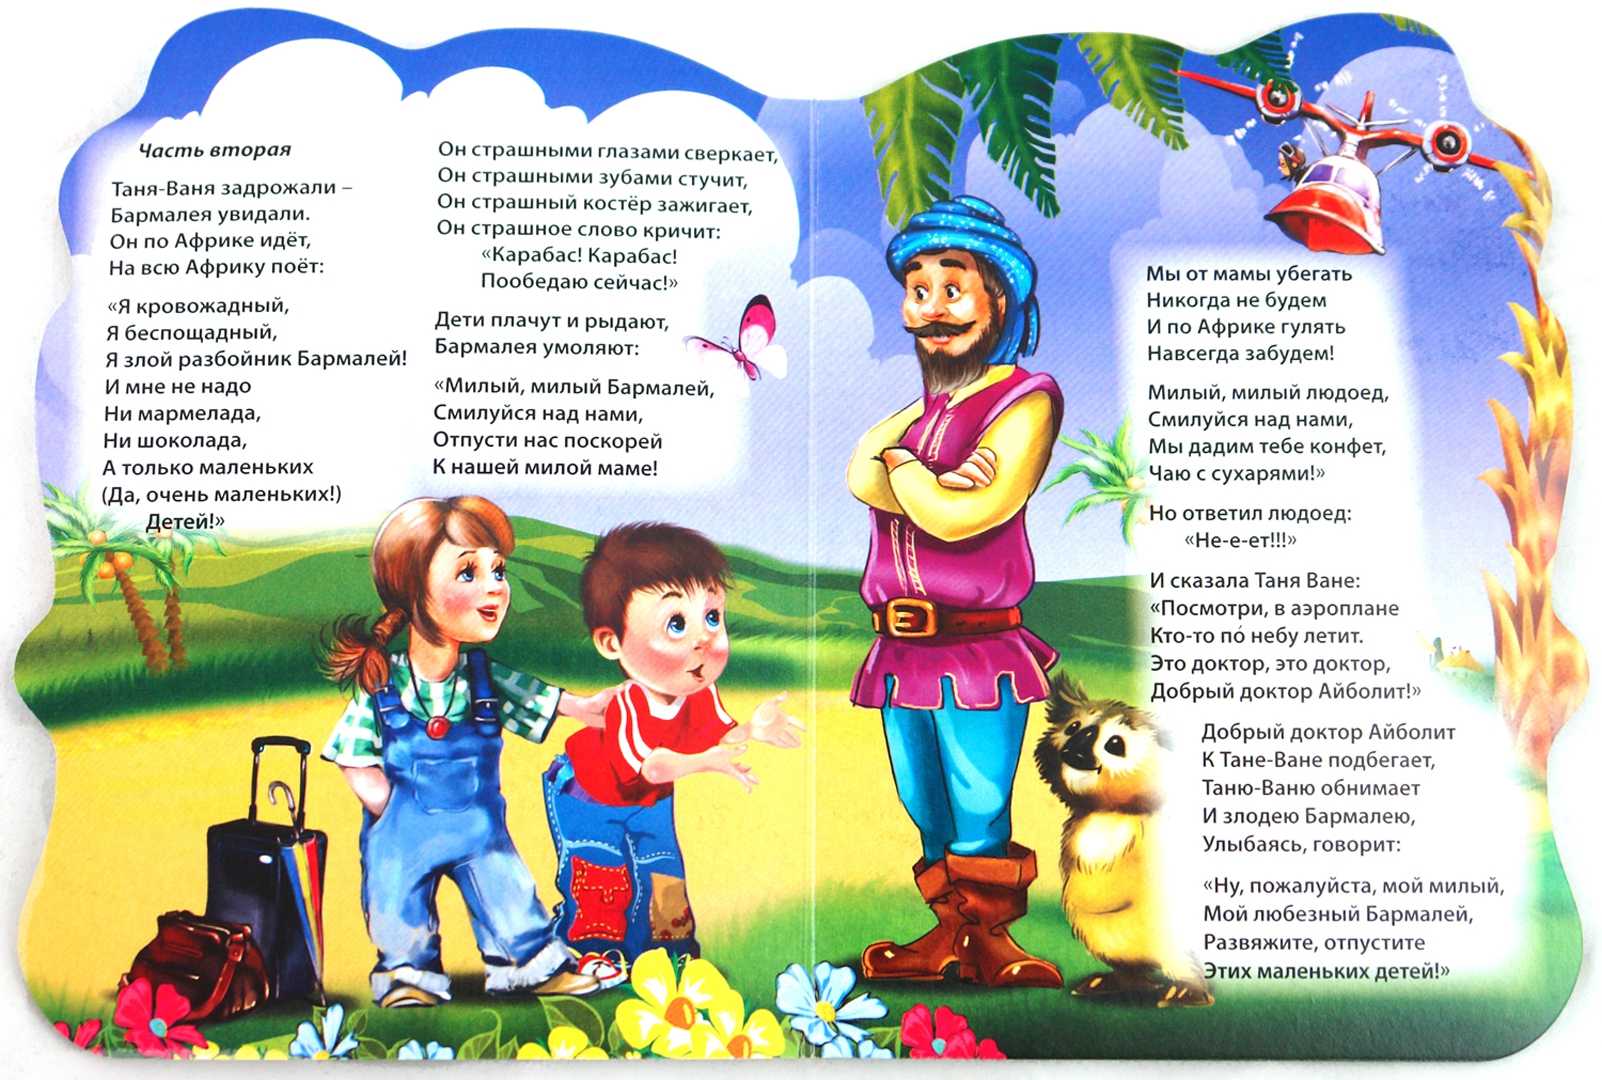 15 советских мультфильмов по мотивам сказок чуковского